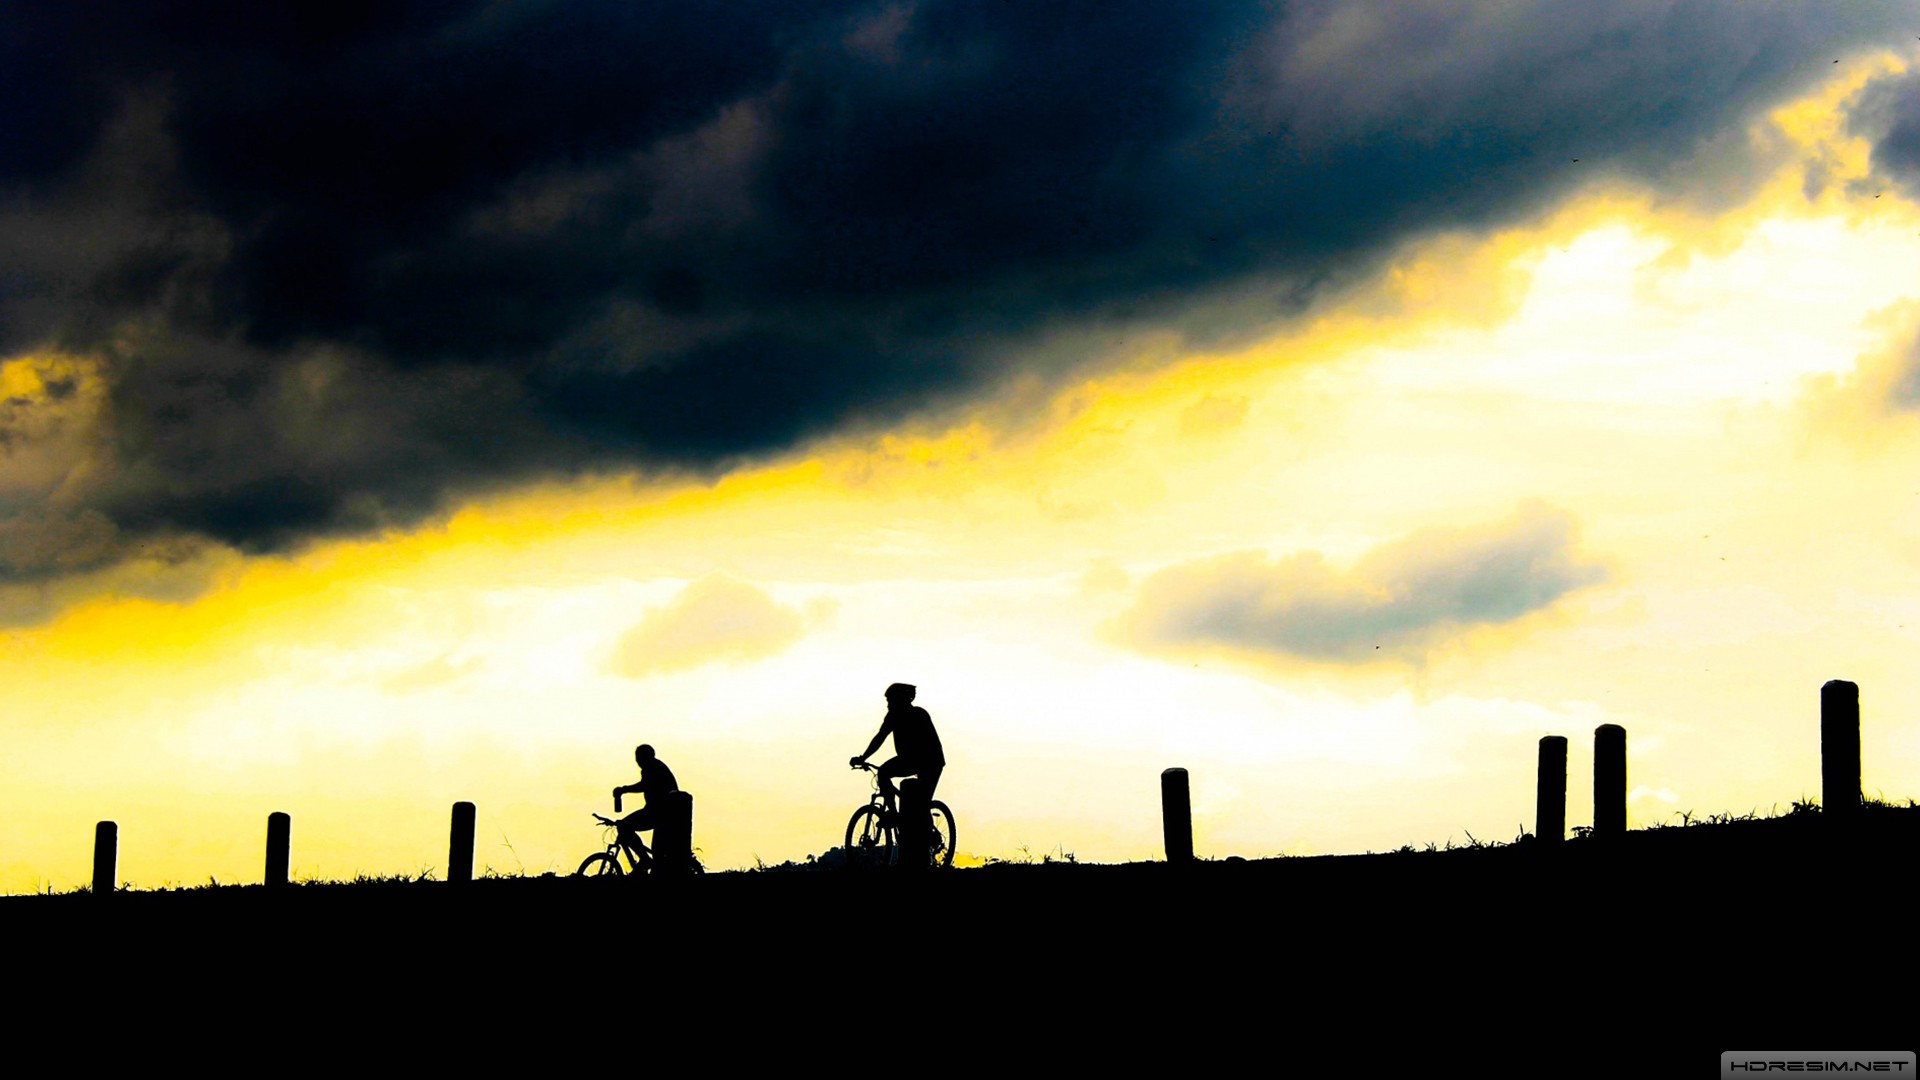 bisiklet,spor,günbatımı